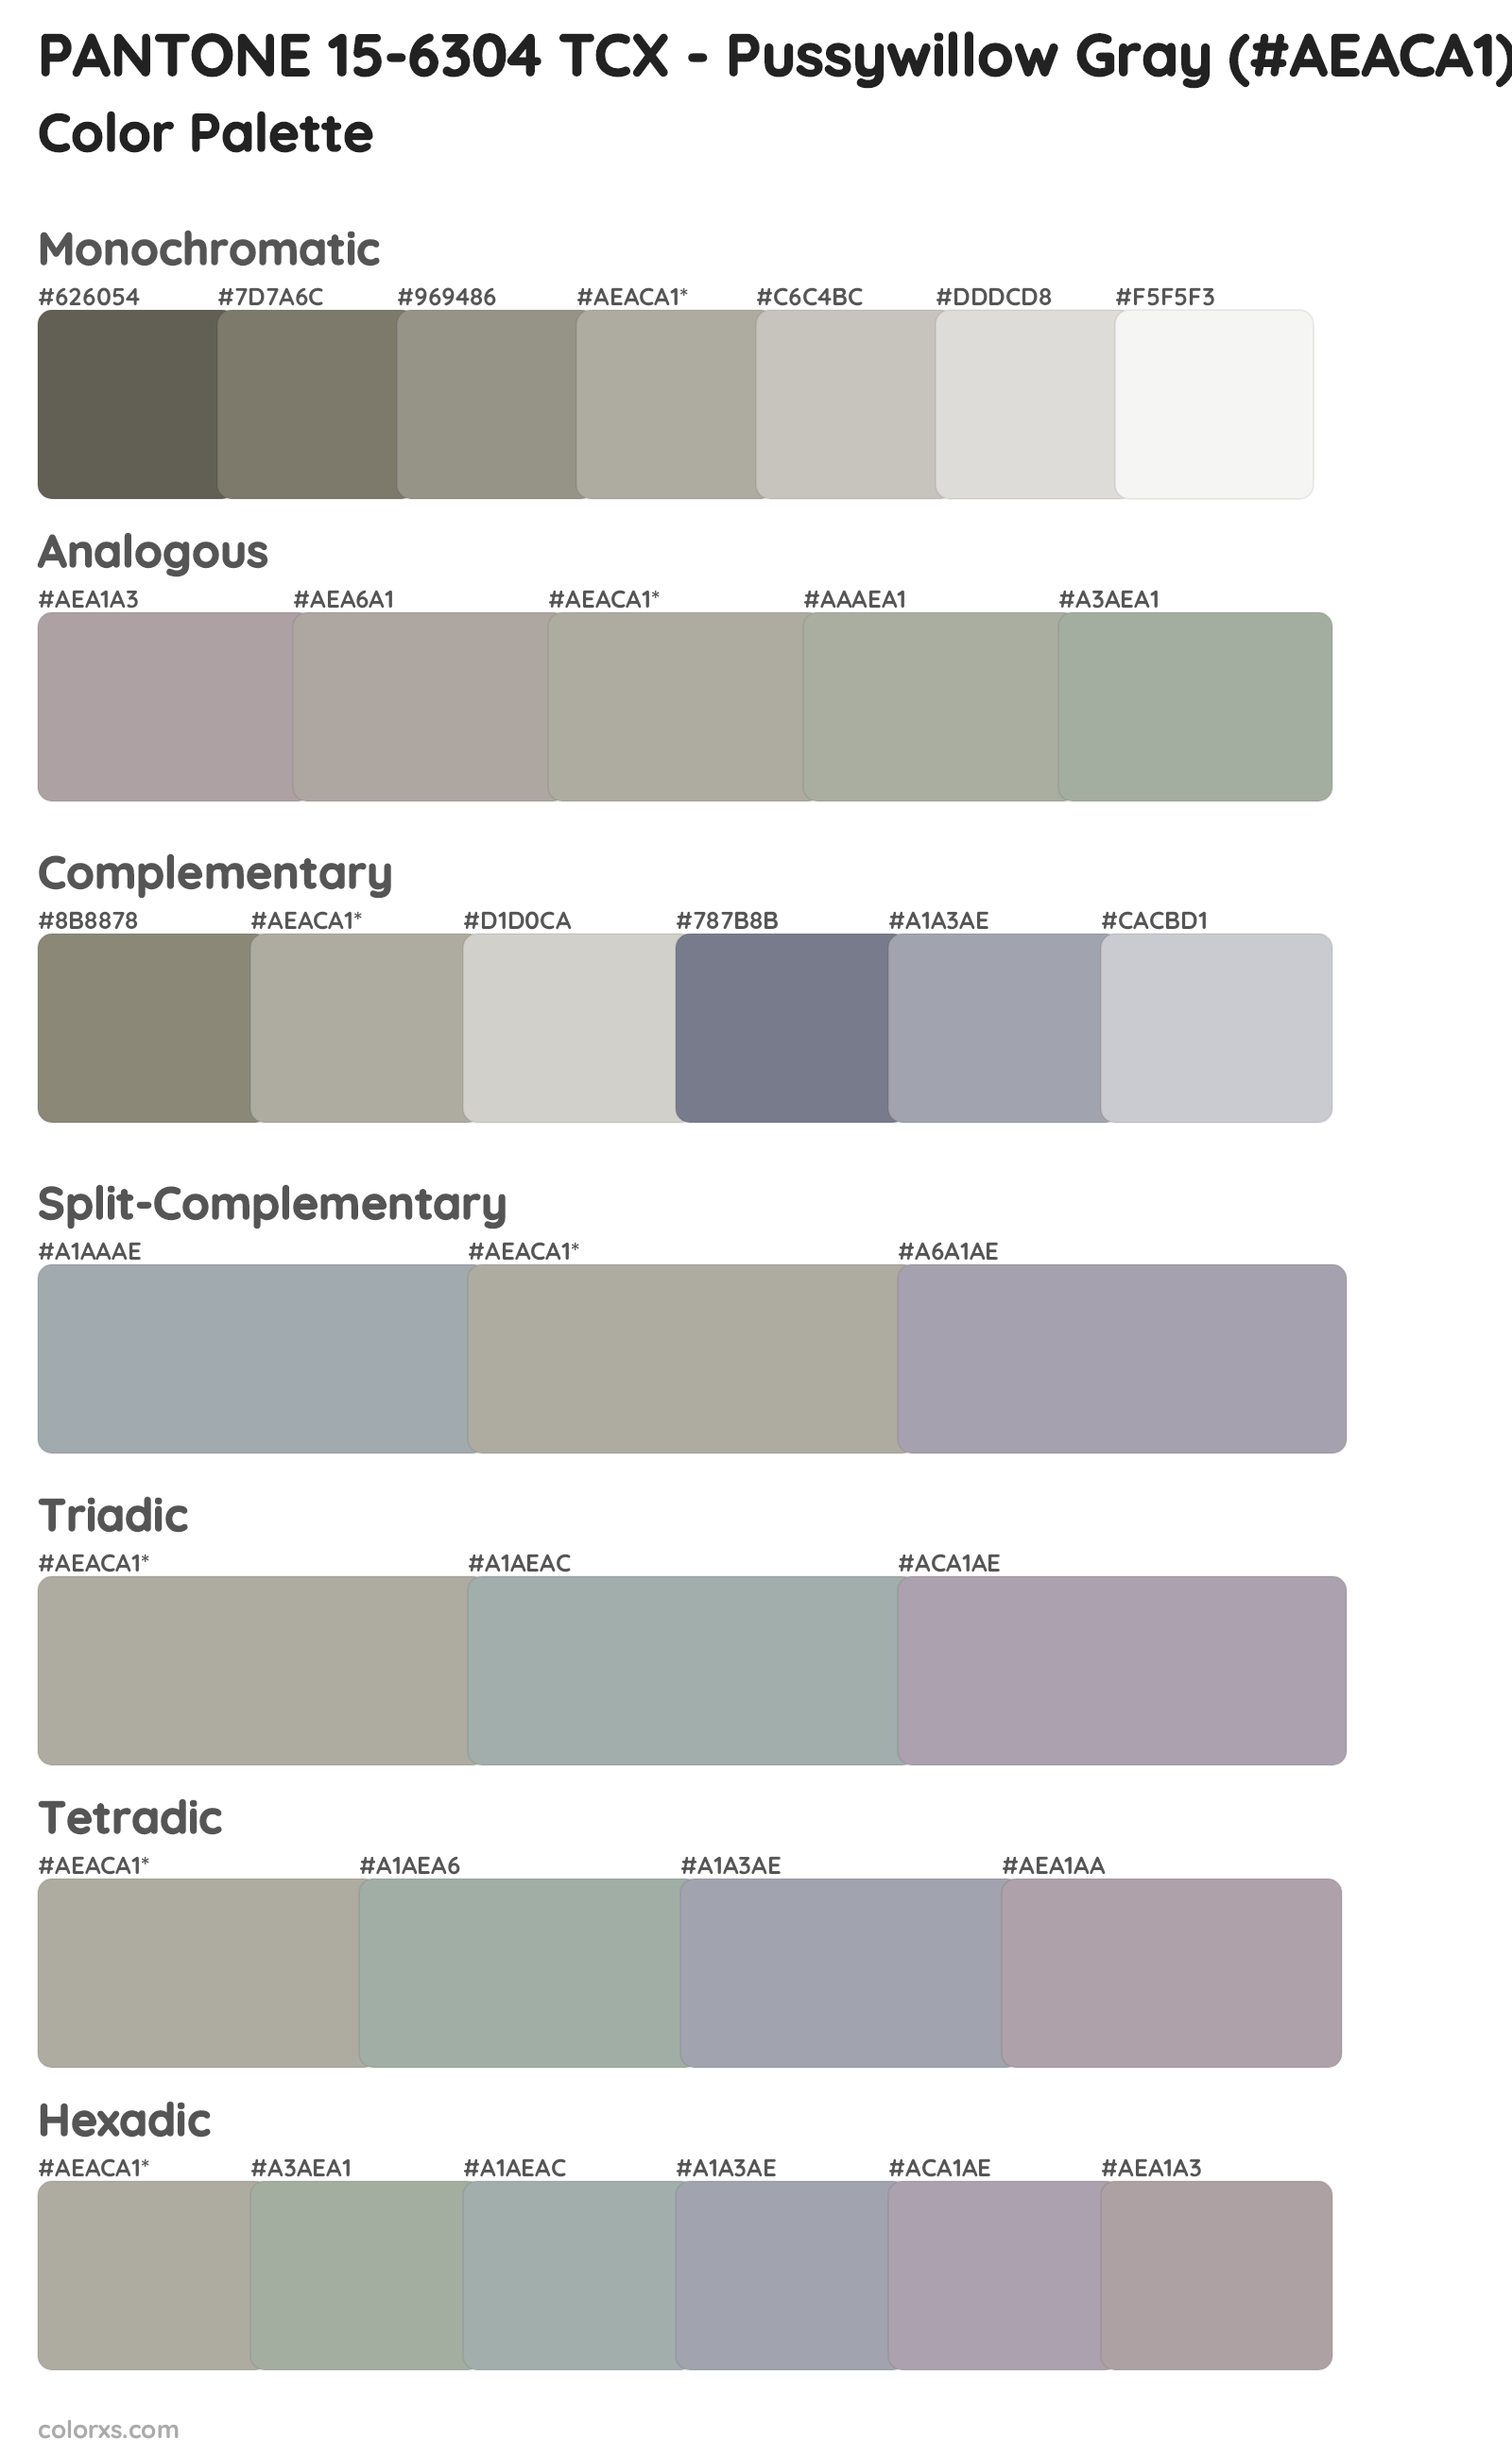 PANTONE 15-6304 TCX - Pussywillow Gray Color Scheme Palettes